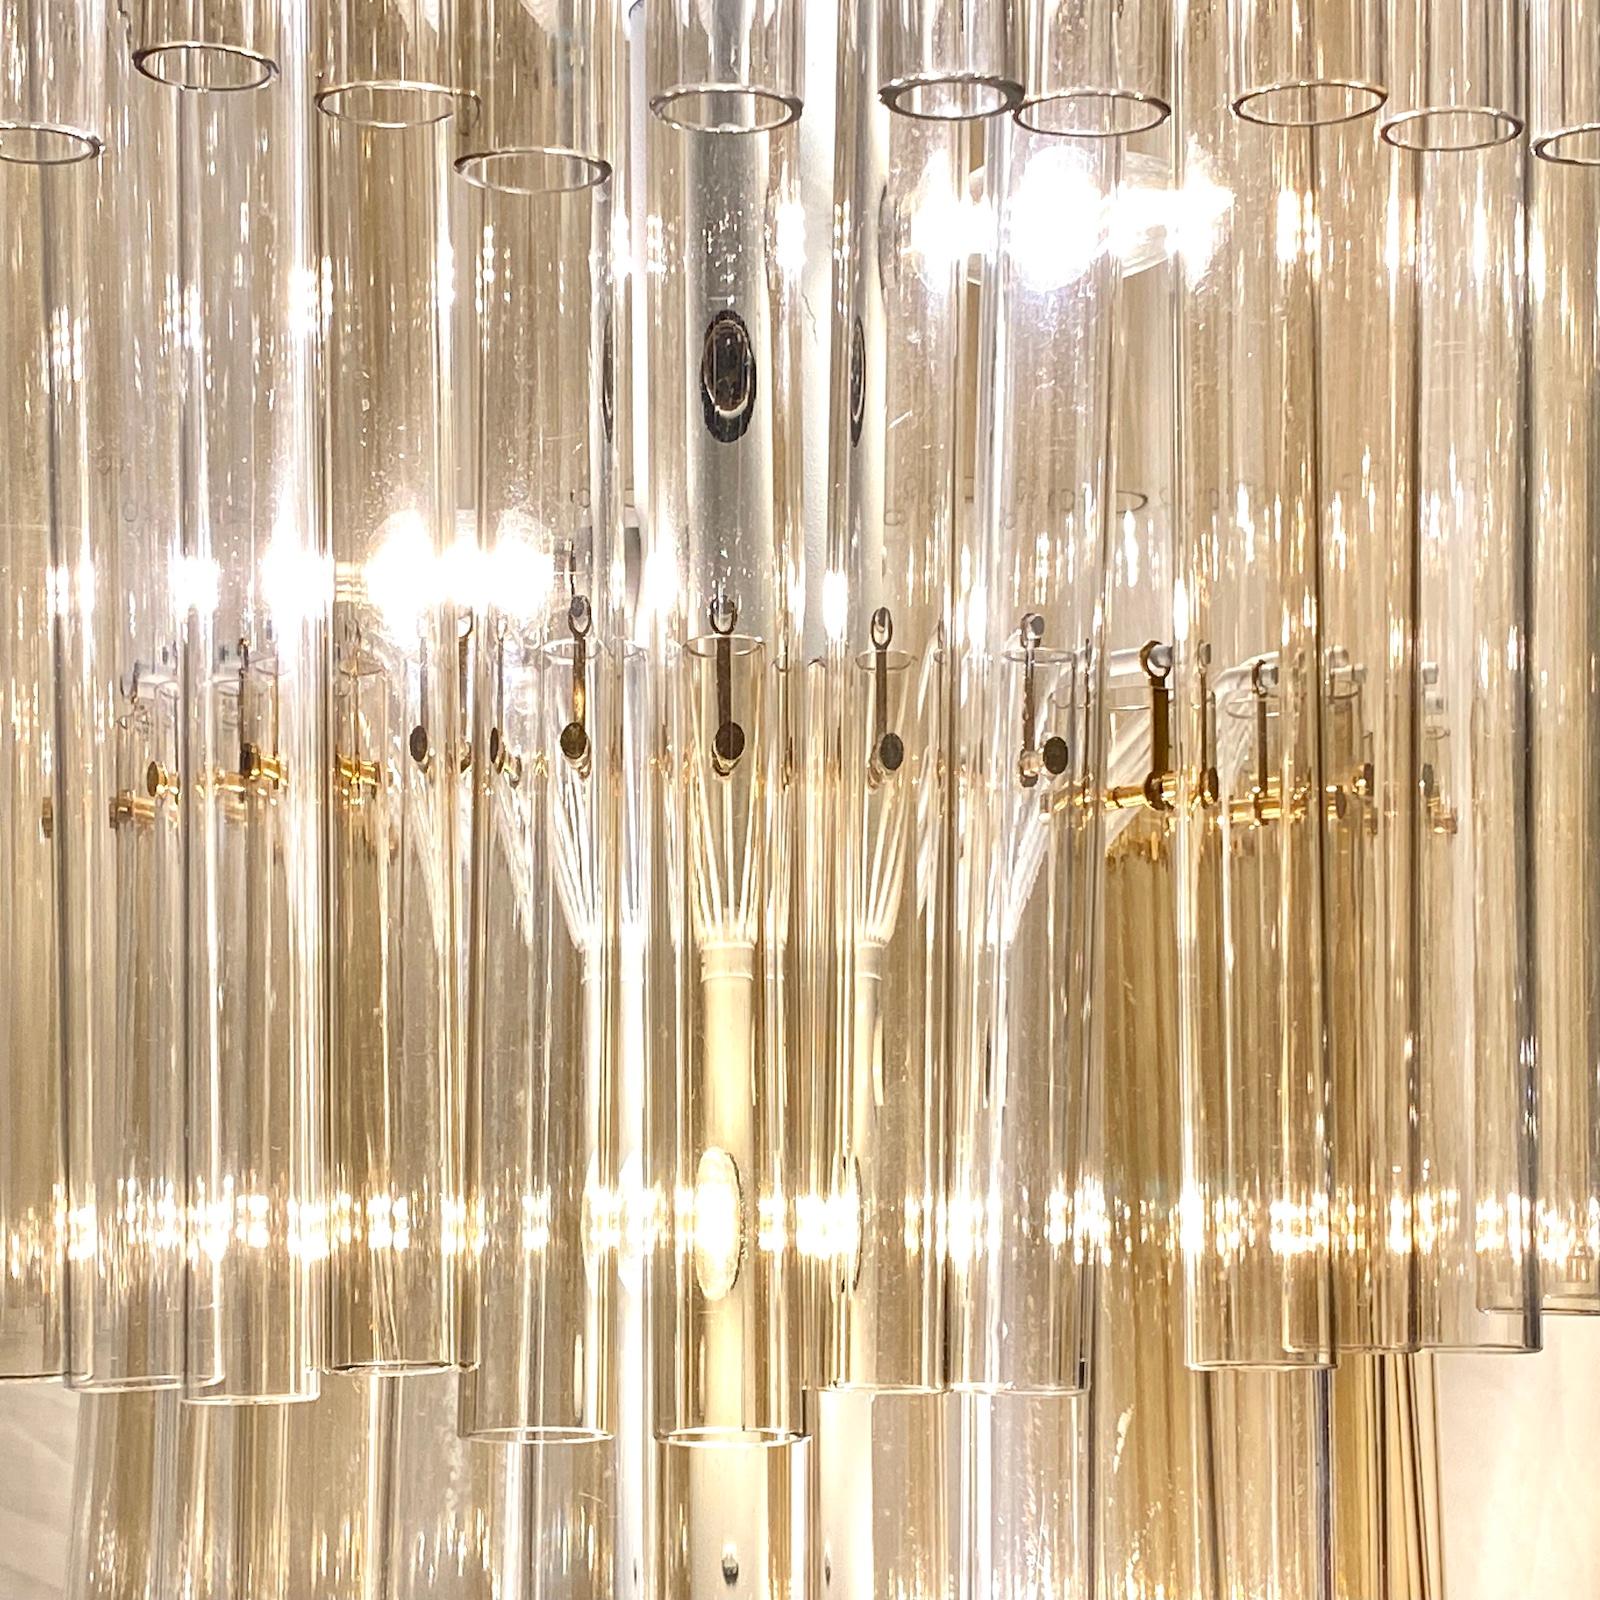 Un lustre anglais de style Art Déco datant des années 1950, avec des tiges en verre soufflé transparent et 15 lampes intérieures.

Mesures :
Hauteur minimale : 41